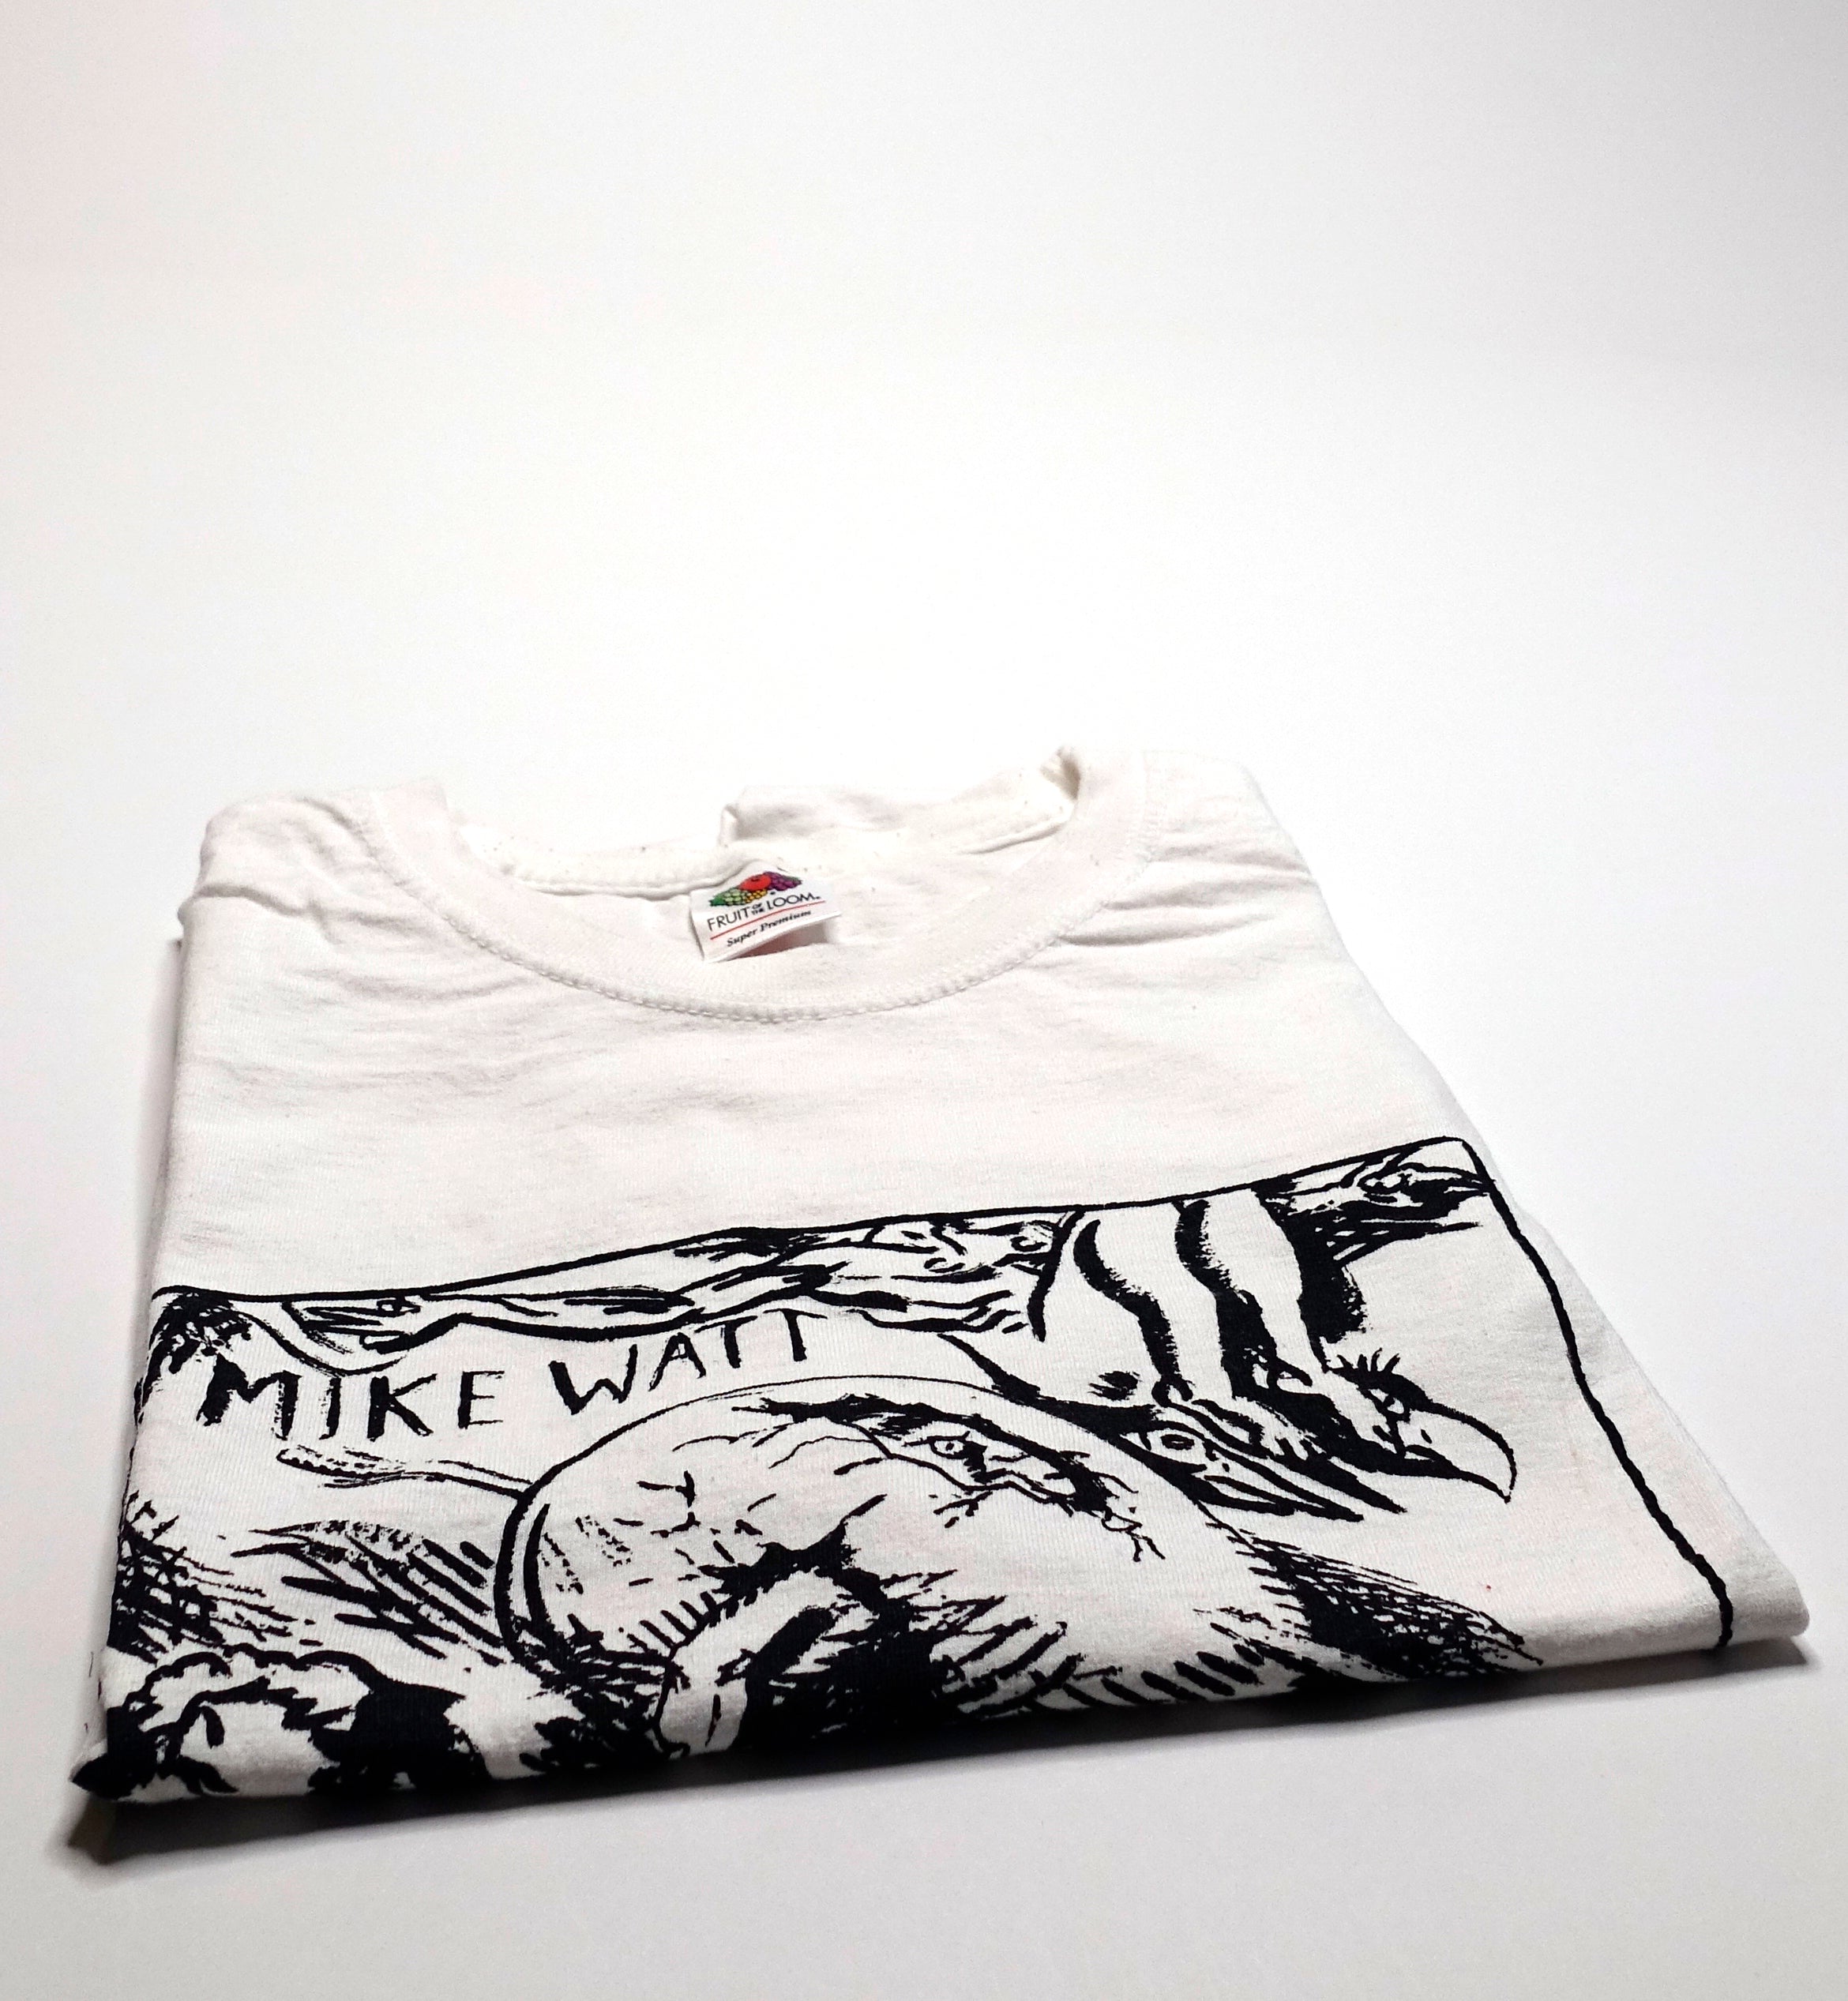 Mike Watt & the Missingmen - Third Opera Europe 2014 Tour Shirt Size Medium